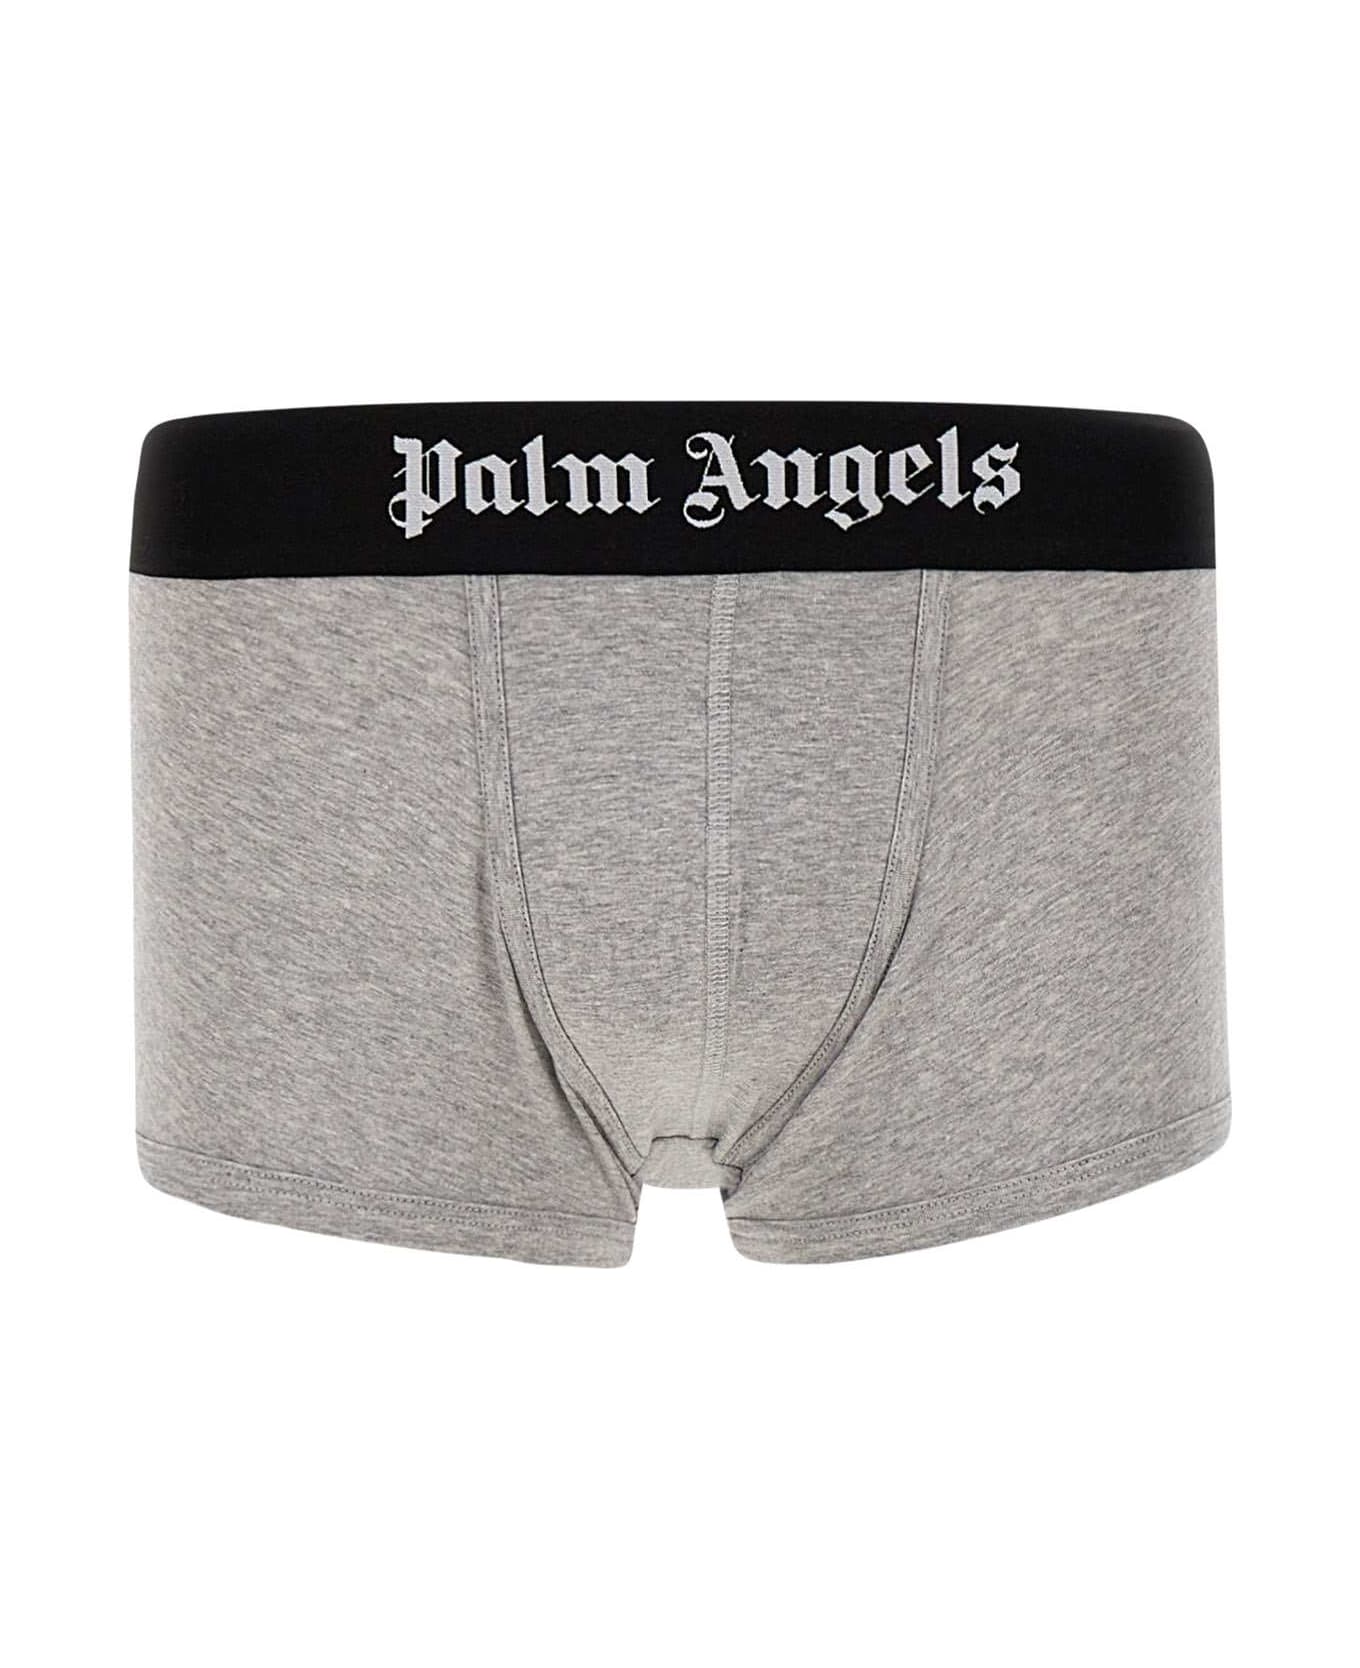 Palm Angels Cotton Boxer Shorts - Multicolor